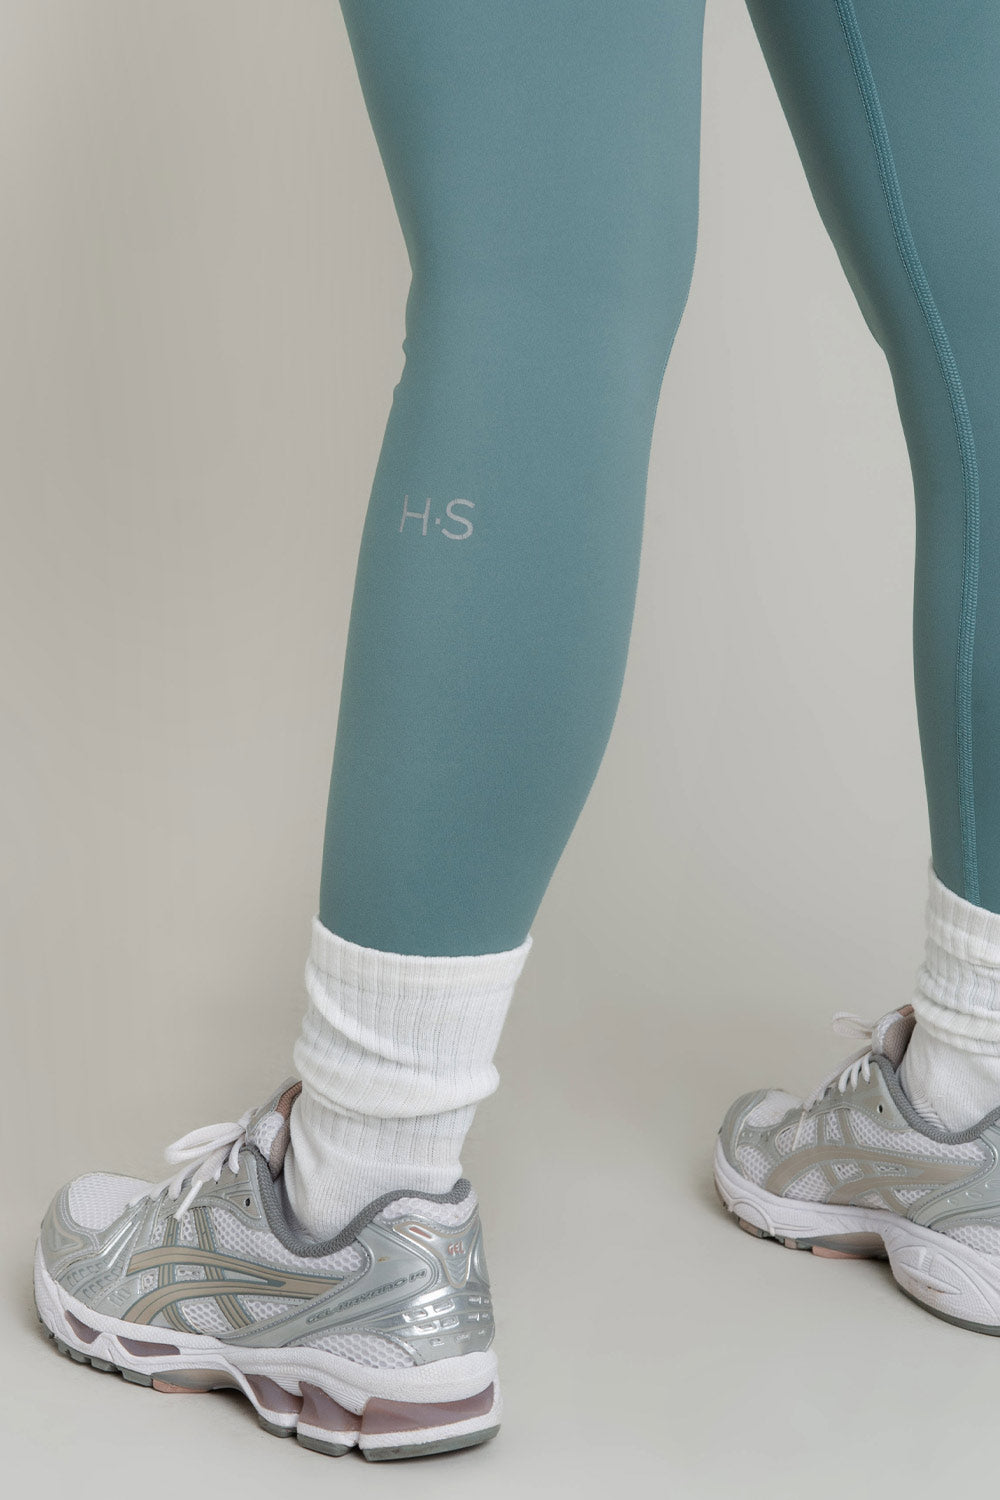 Legging deportivo de fit ajustado, cintura alta y pretina contorneada.